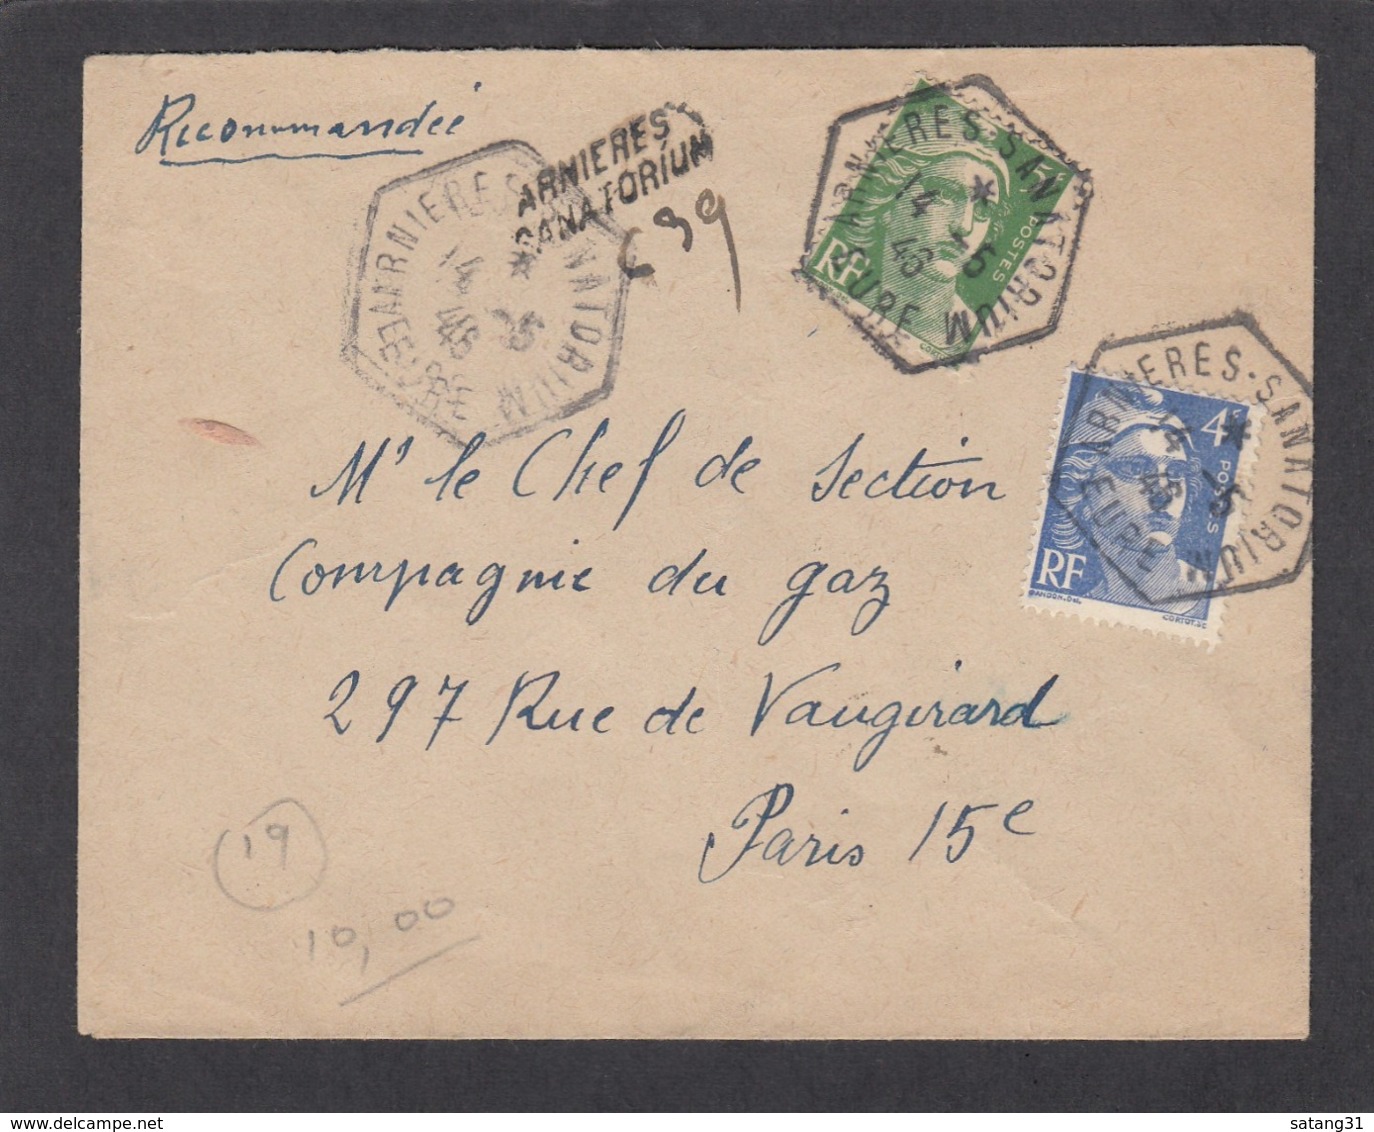 LETTRE RECOMMANDÉE DE "ARNIERES SANATORIUM" AVEC CACHET DE FORTUNE POUR PARIS,1945. - Briefe U. Dokumente